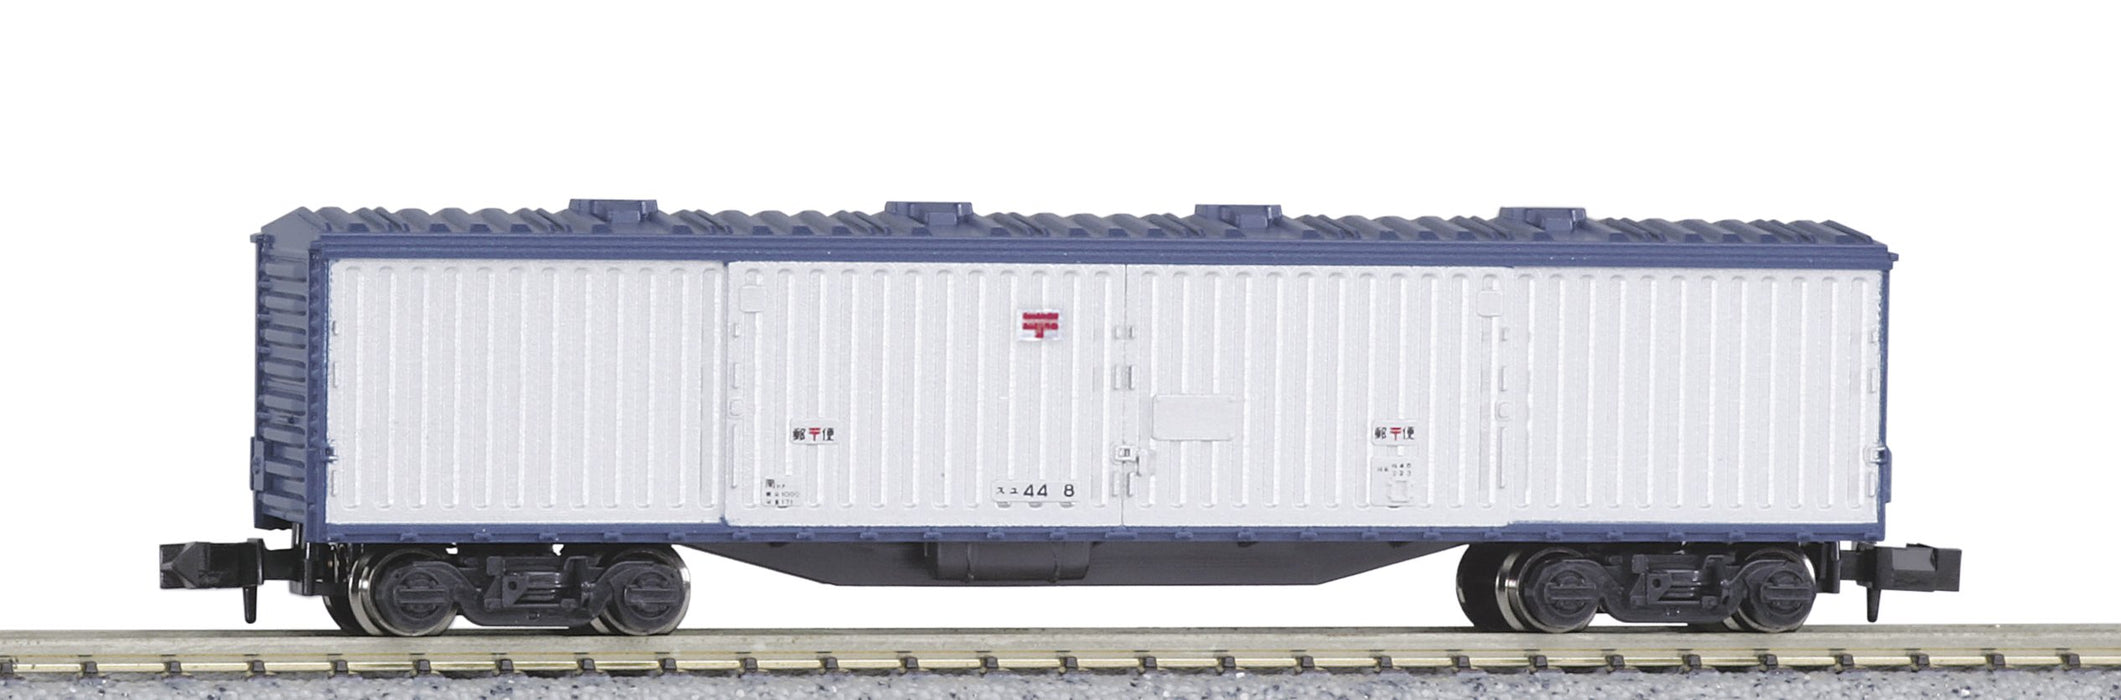 Kato N Gauge Suyu44 8026 Güterwagen – Fortgeschrittenes Eisenbahnmodell